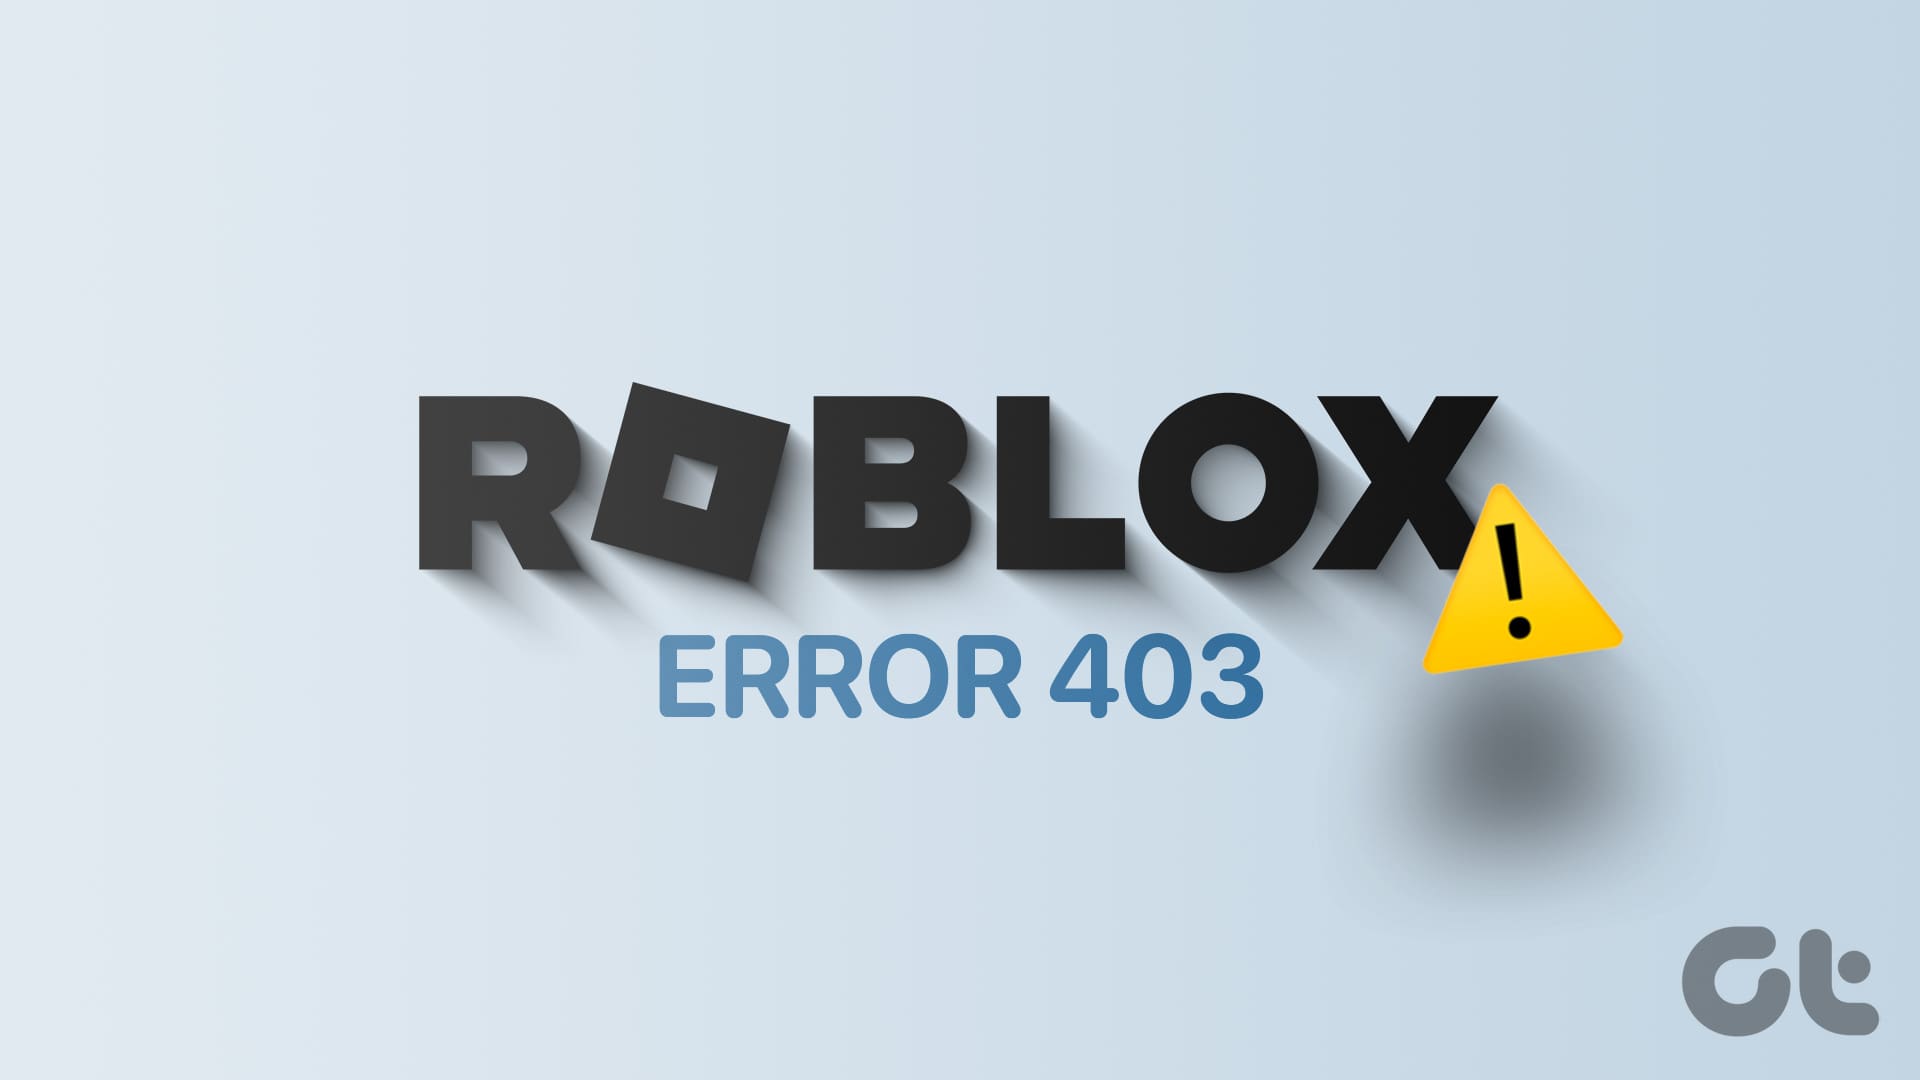 How to Fix Roblox Error Code 279 in 2023